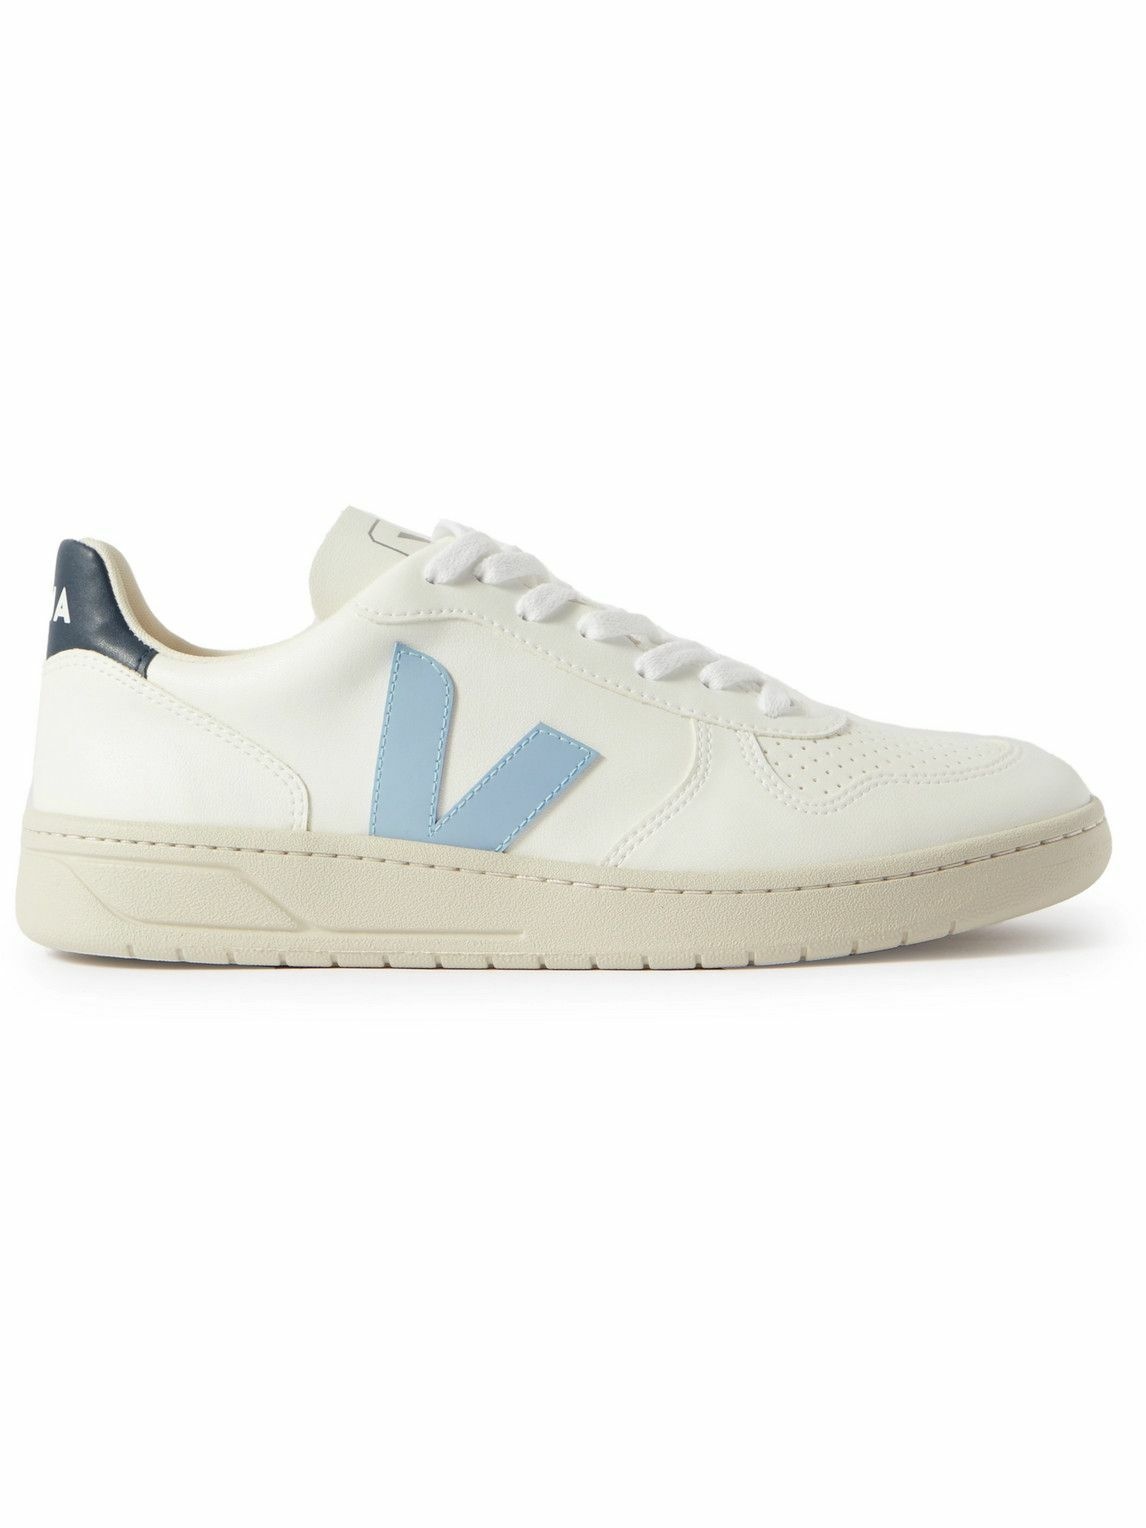 Veja - V-10 Rubber-Trimmed Faux Leather Sneakers - White VEJA